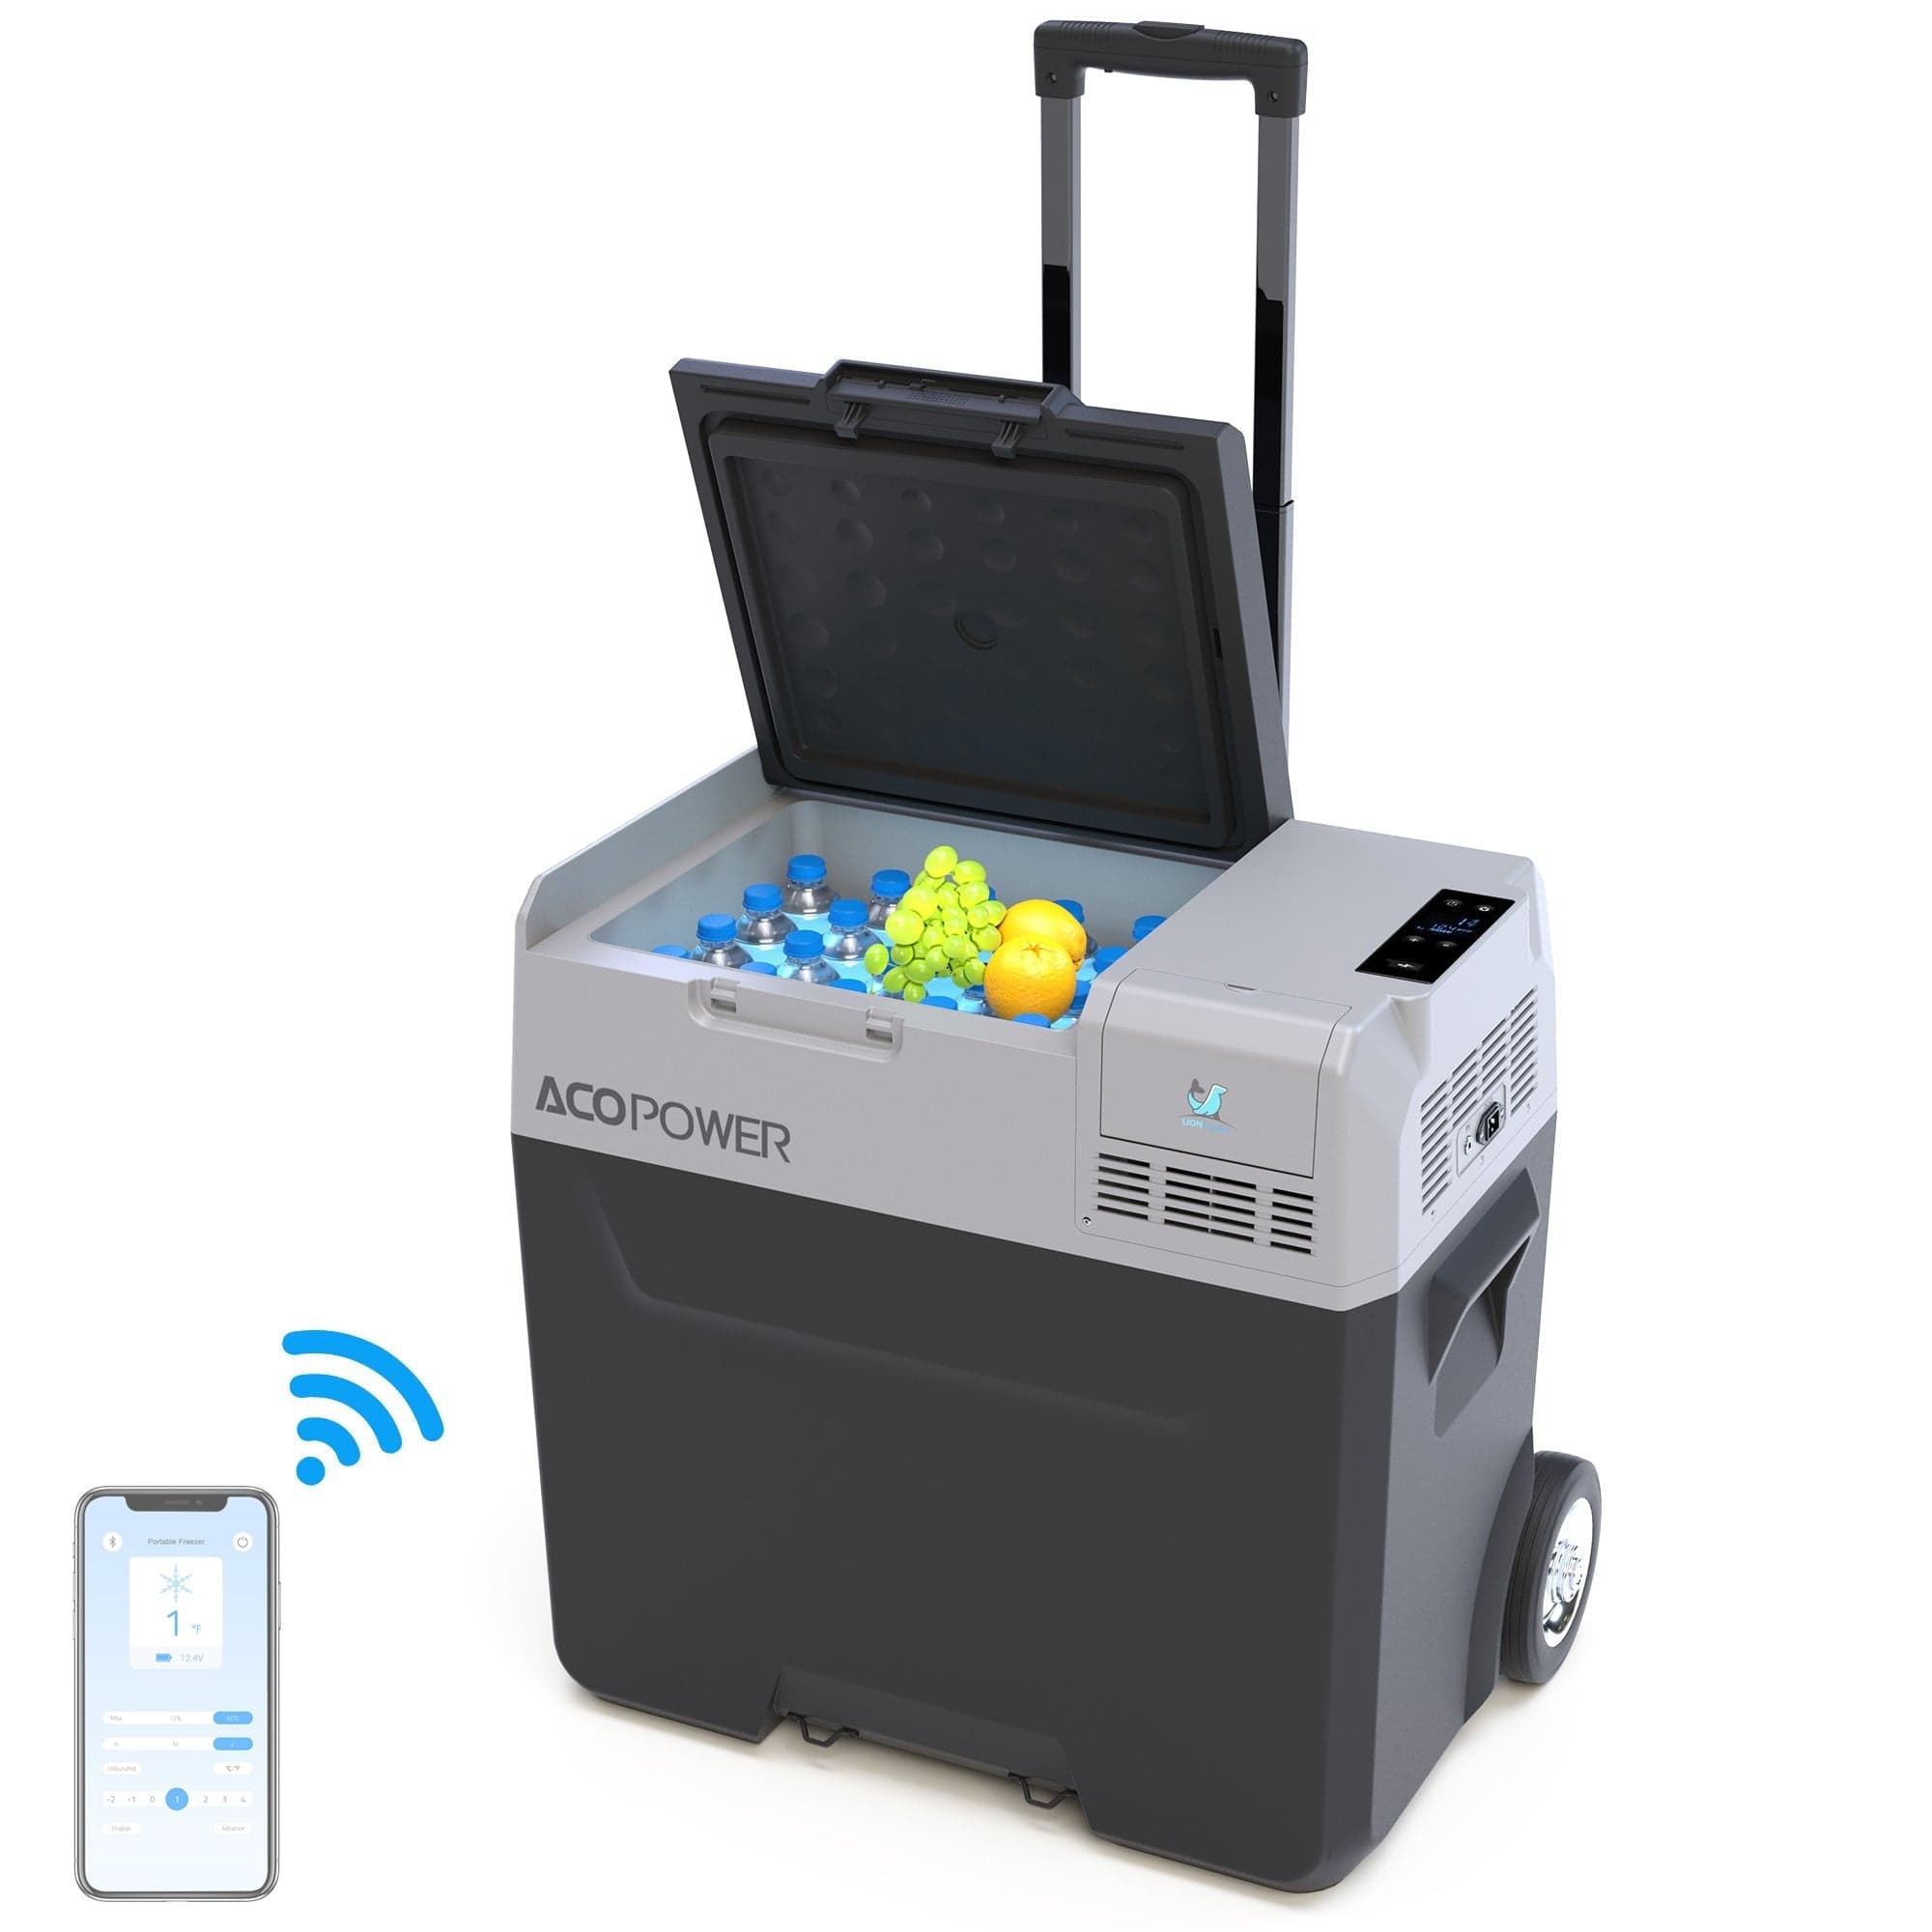 LiONCooler Pro Portable Solar Fridge Freezer, 52 Quarts, Used Like New AcoPower With Battery Fridges